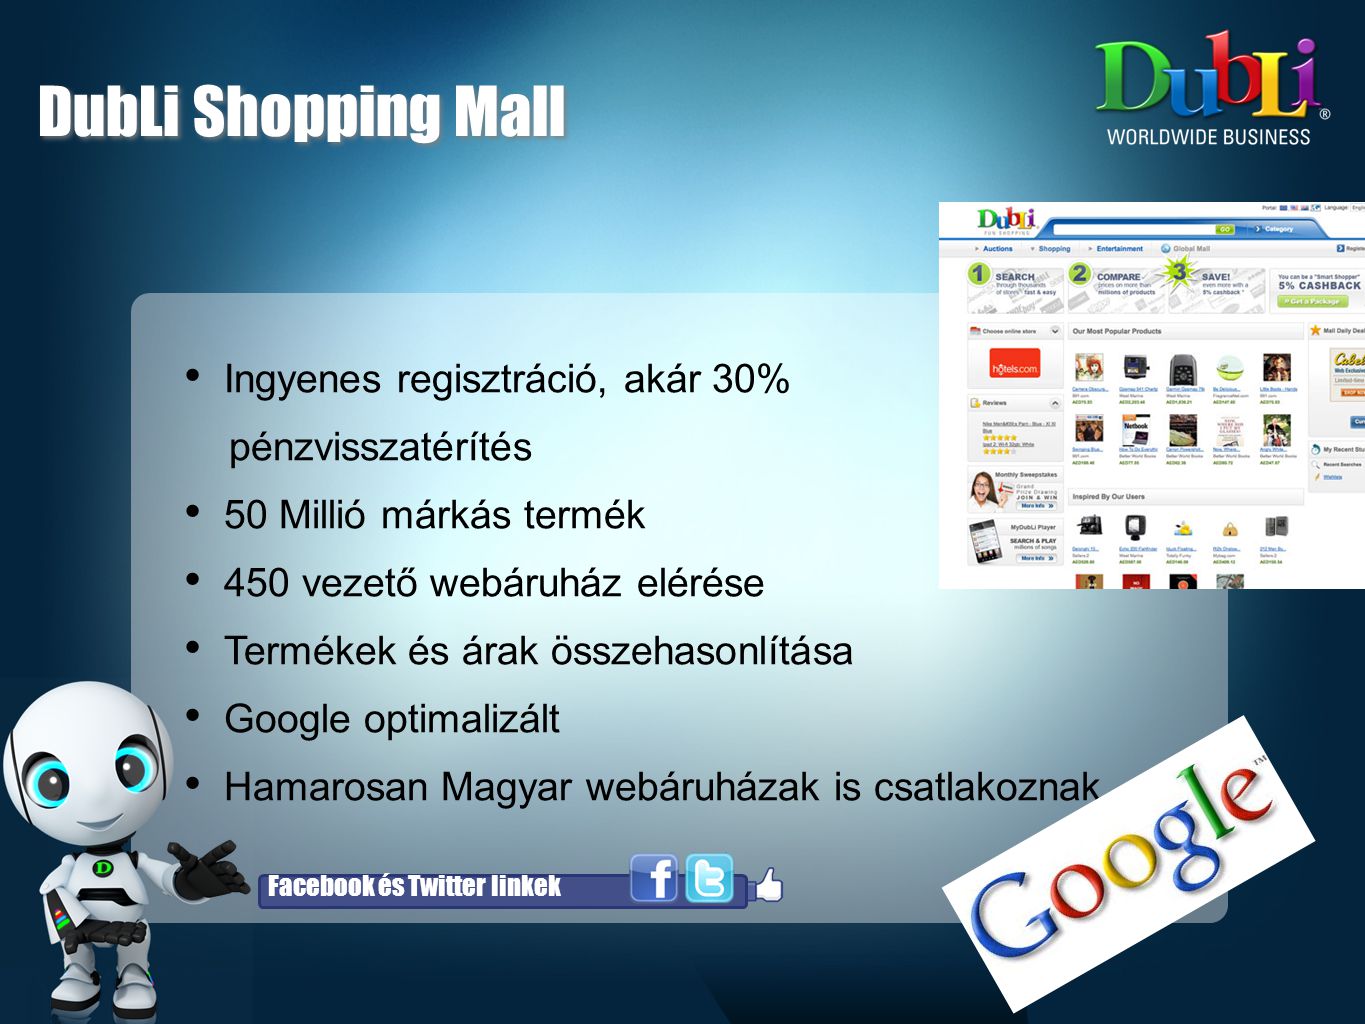 DubLi Shopping Mall Ingyenes regisztráció, akár 30% pénzvisszatérítés